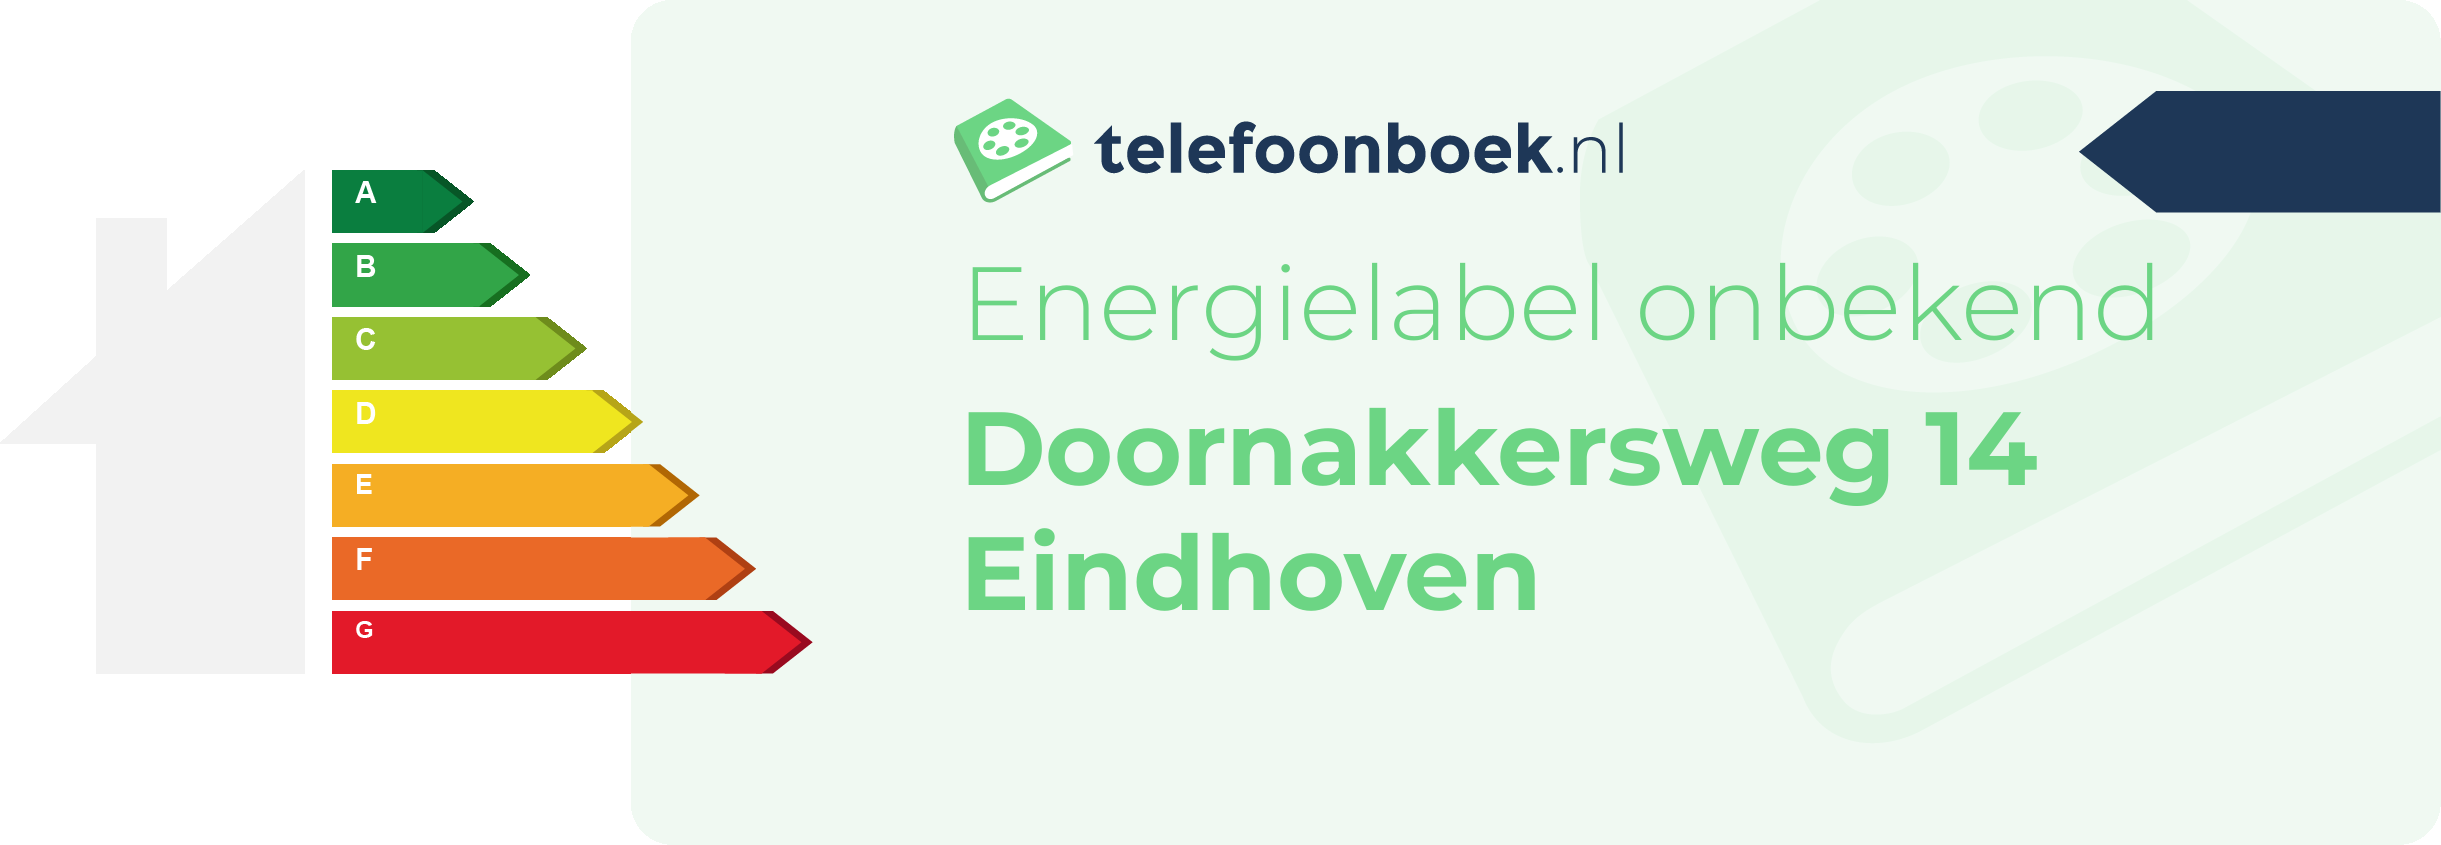 Energielabel Doornakkersweg 14 Eindhoven